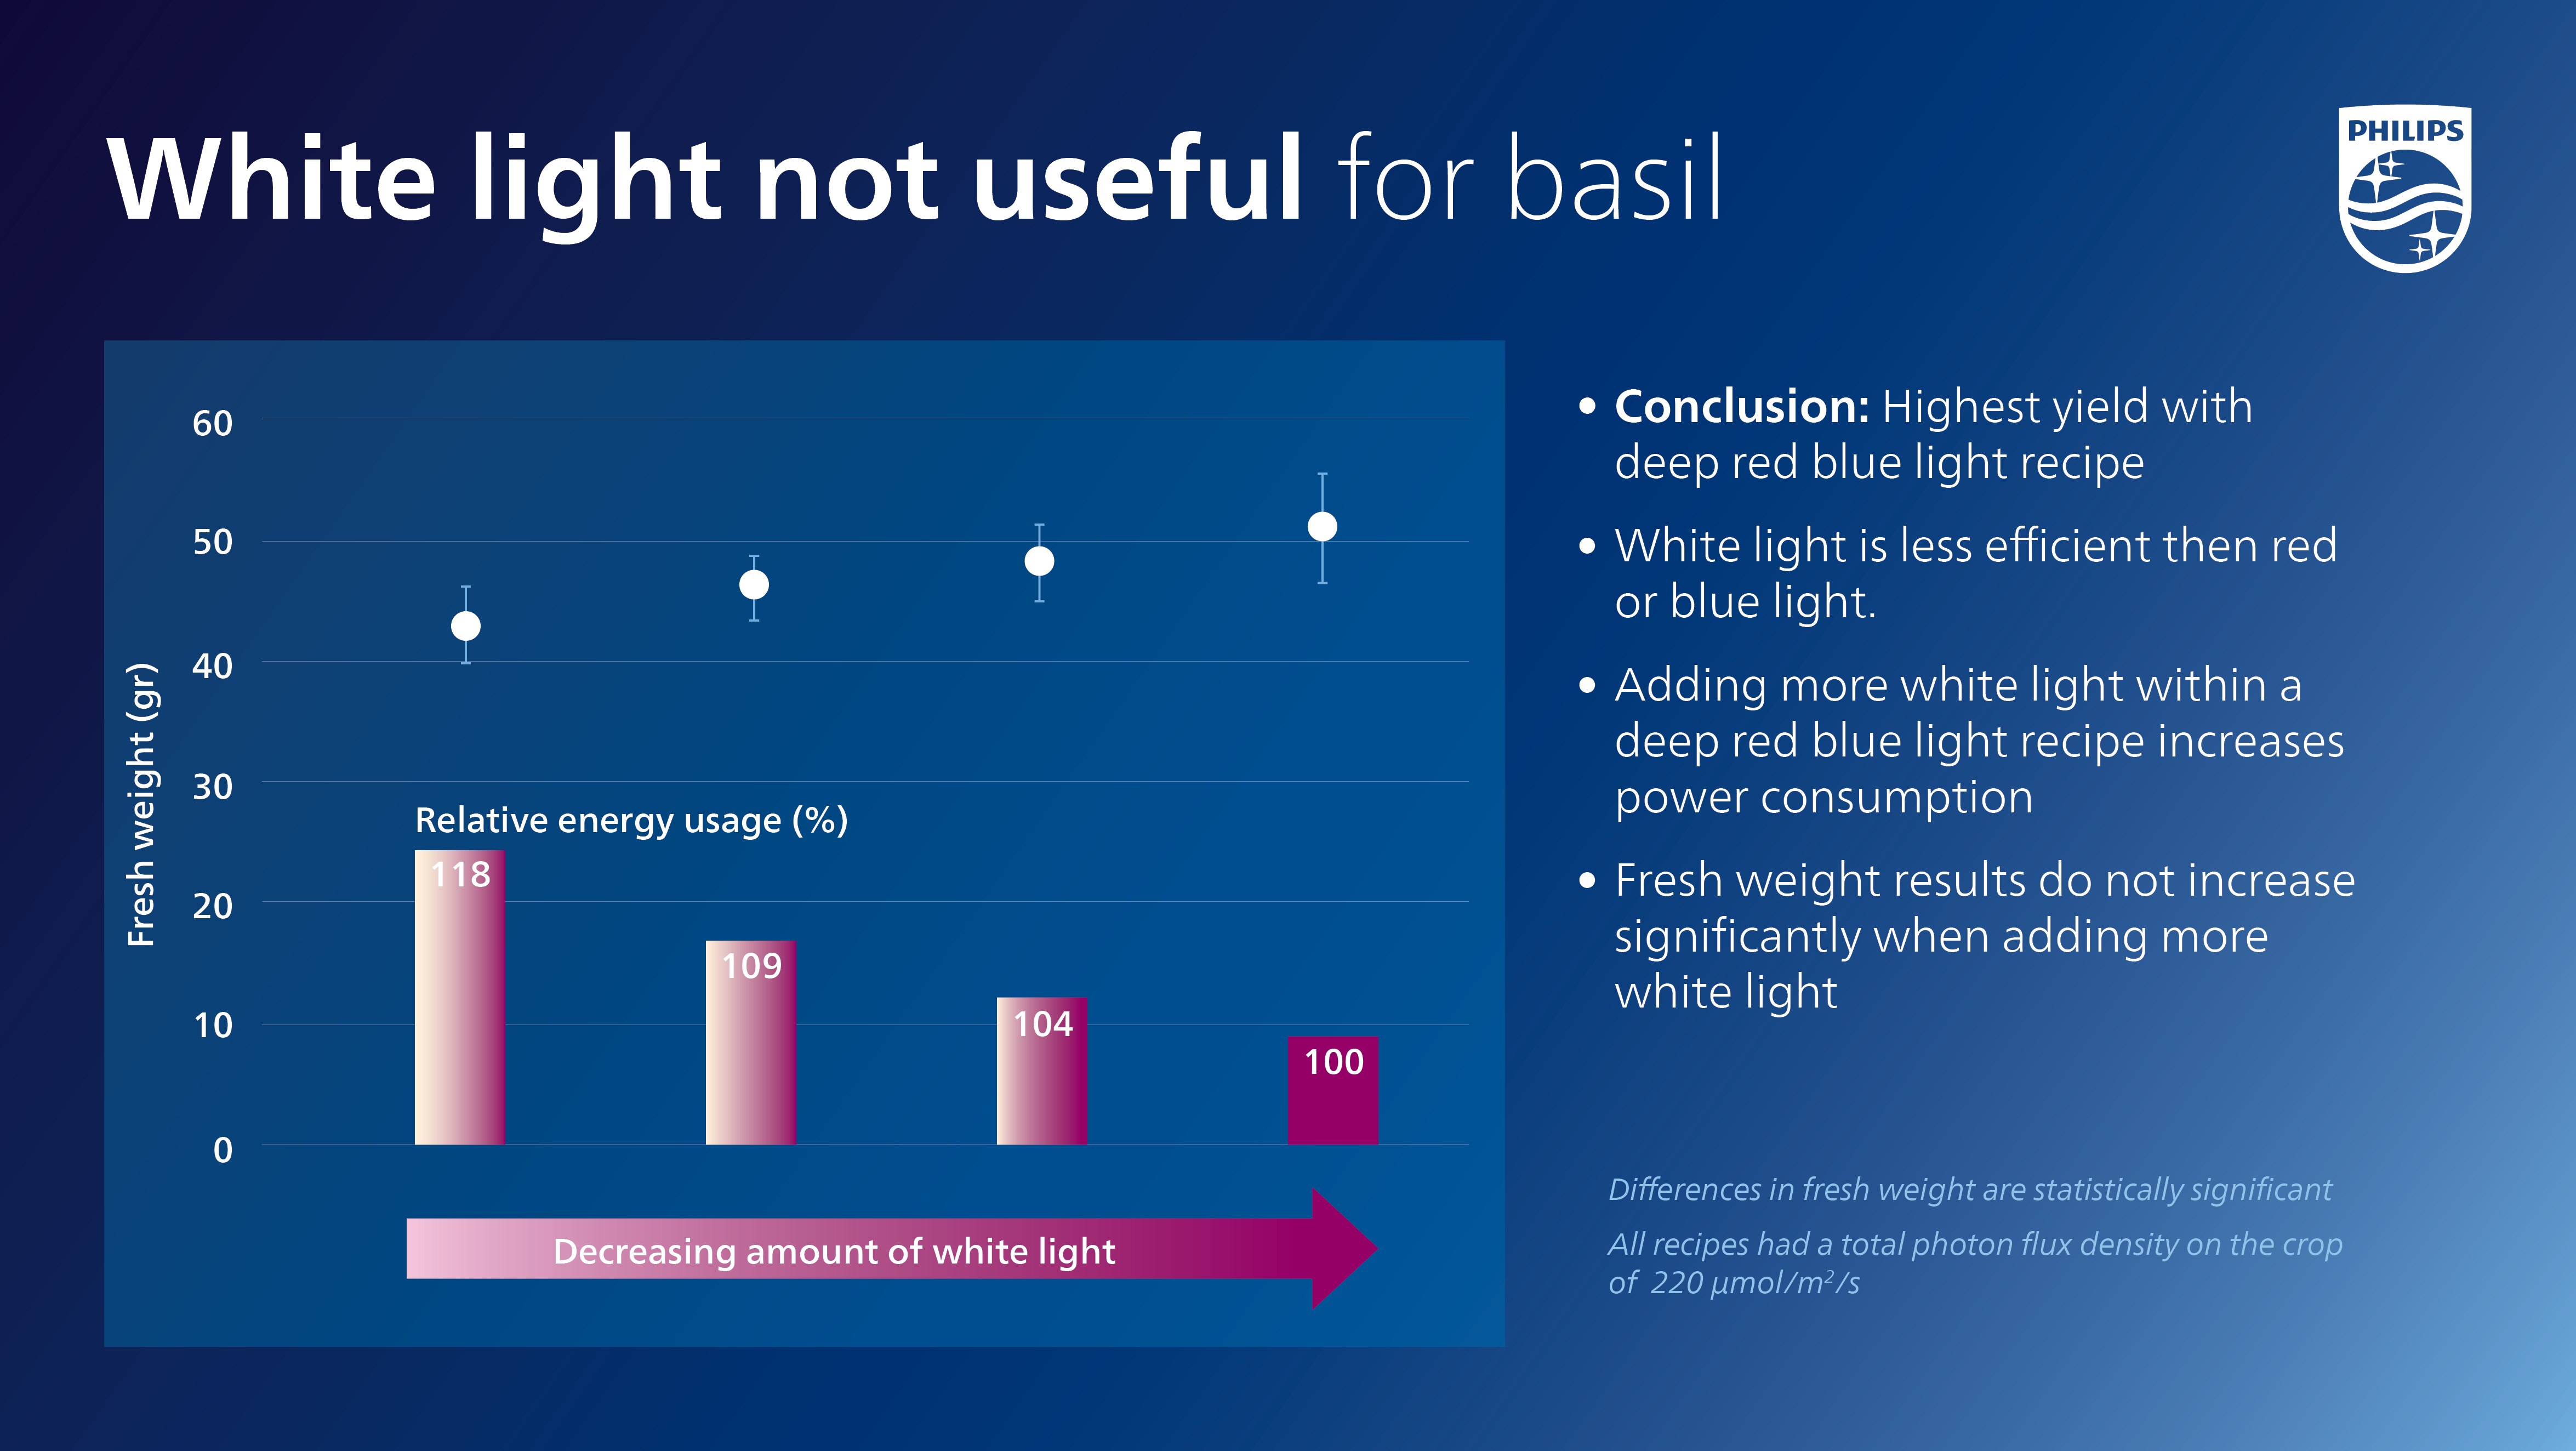 White light not useful for basil